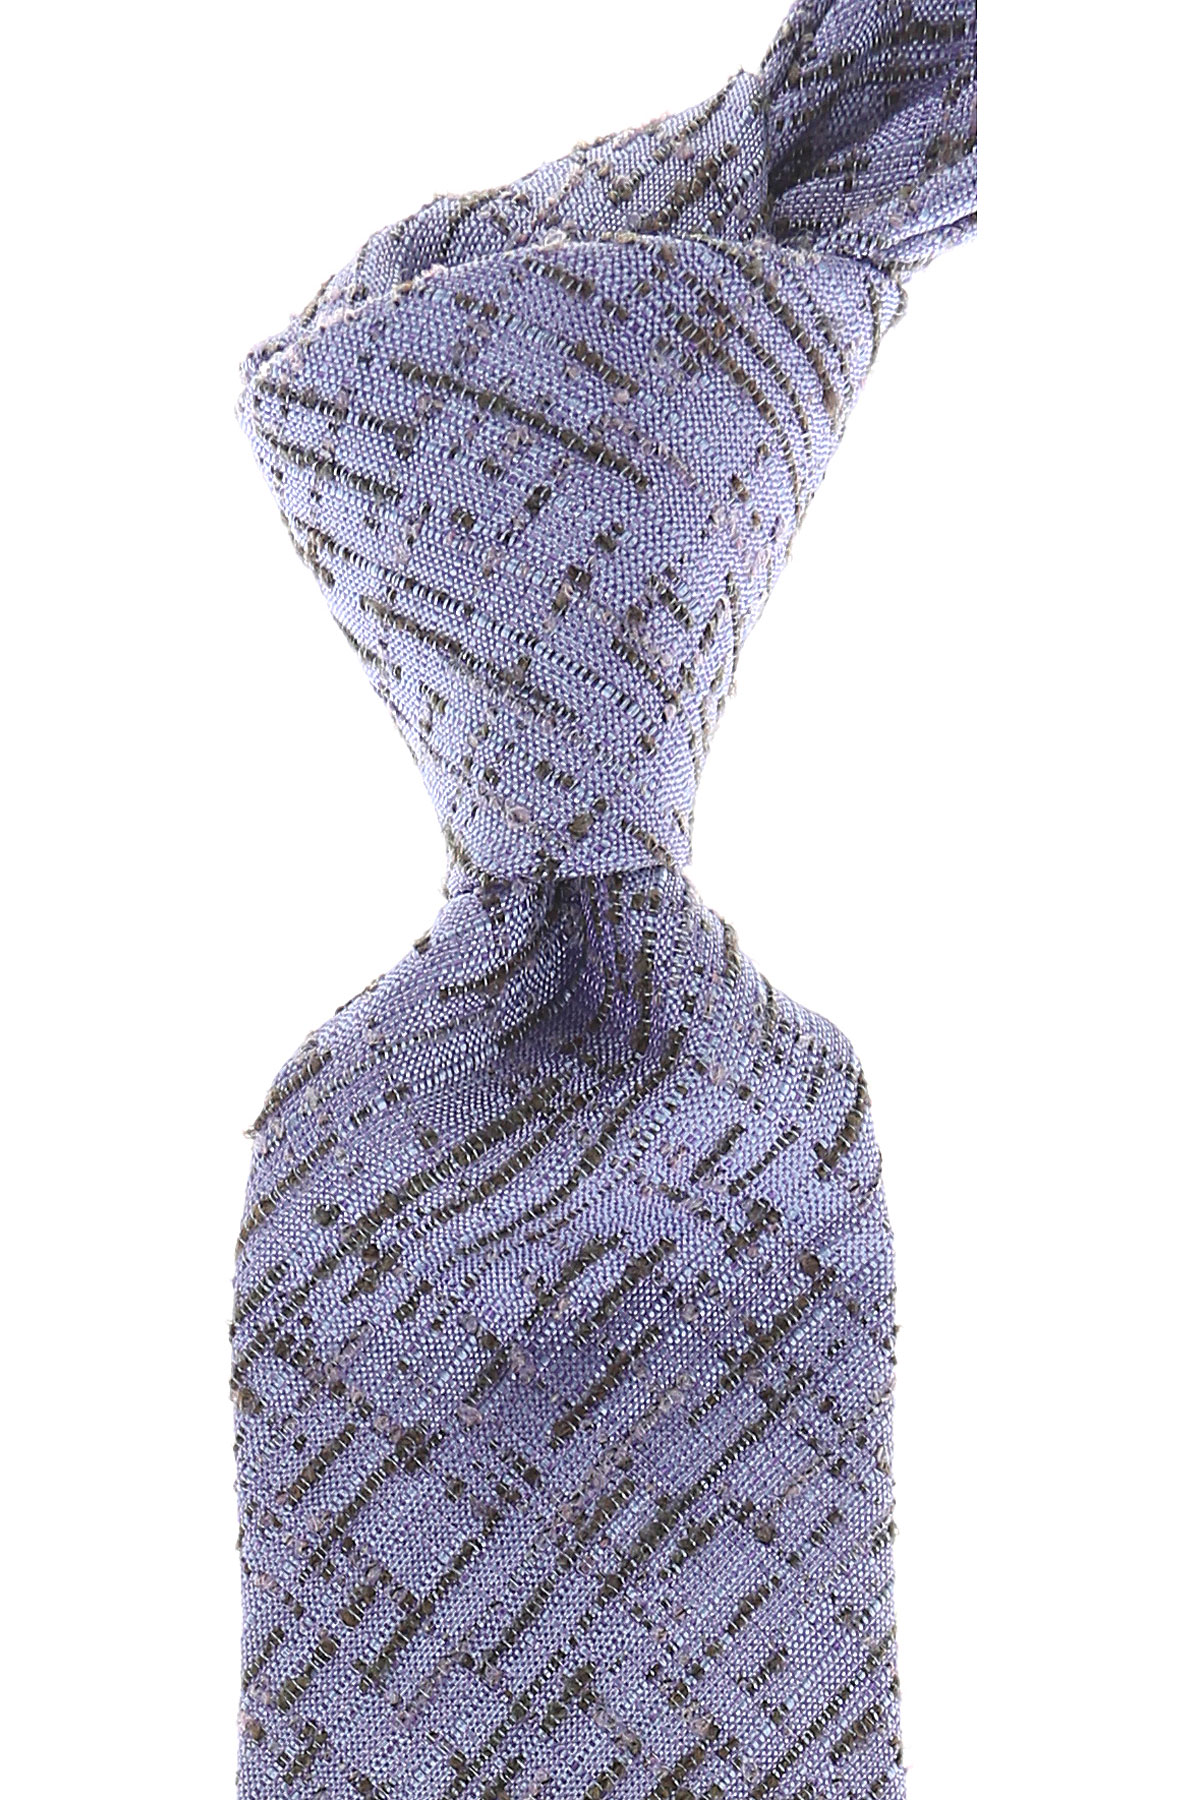 Cravates Kenzo , Mélange lilas, Soie, 2017